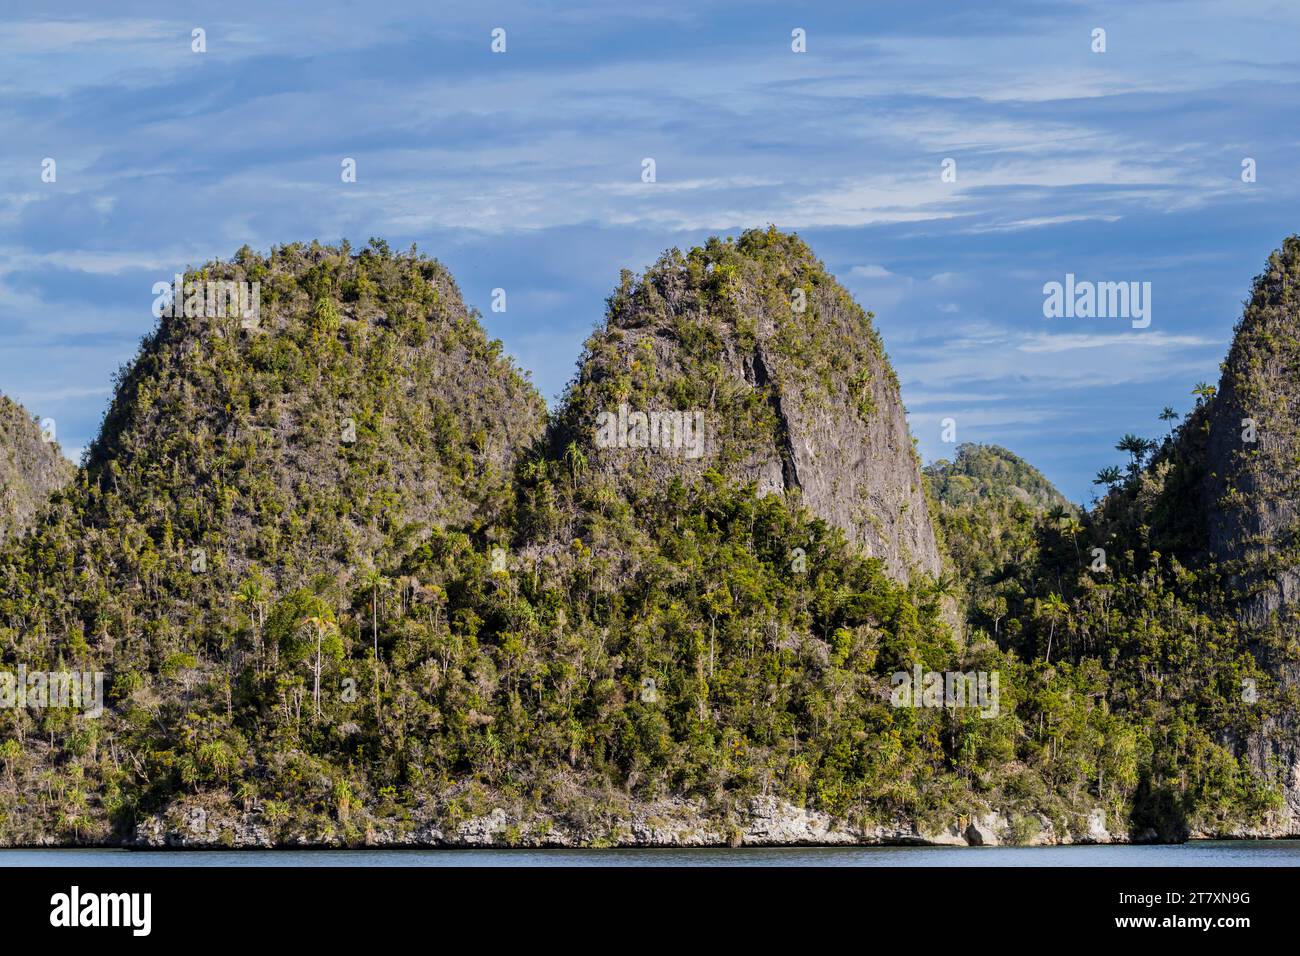 Une vue des îlots couverts de végétation de l'intérieur du port naturel protégé de Wayag Bay, Raja Ampat, Indonésie, Asie du Sud-est, Asie Banque D'Images